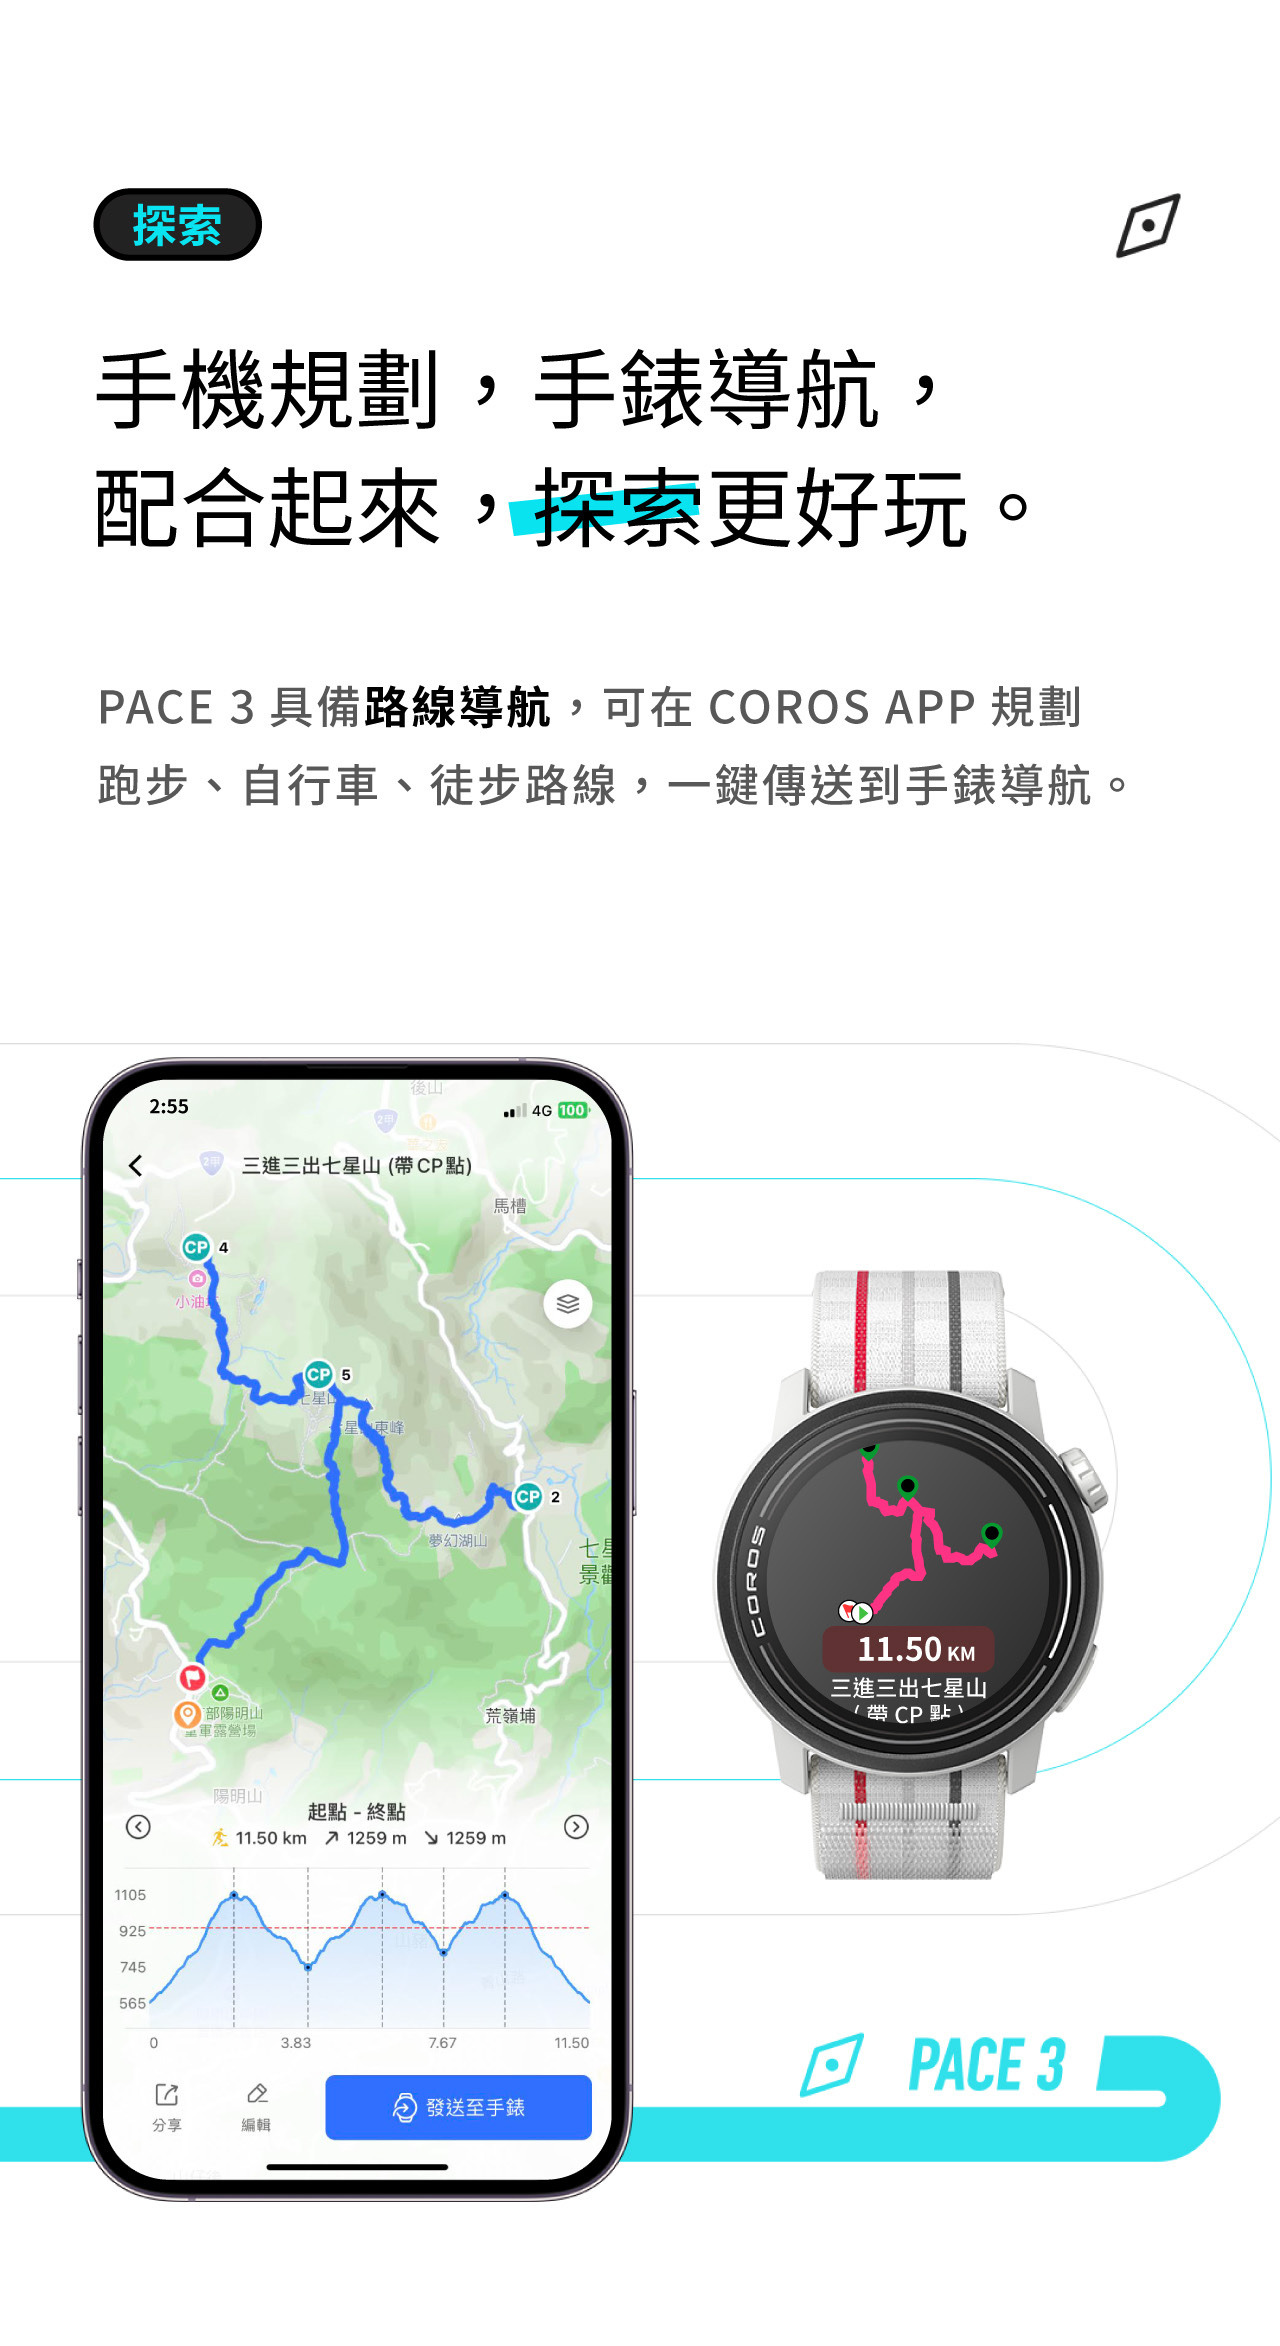 手機規劃，手錶導航， 配合起來，探索更好玩。PACE 3具備路線導航，可在COROS APP規劃 跑步、自行車、徒步路線，一鍵傳送到手錶導航。